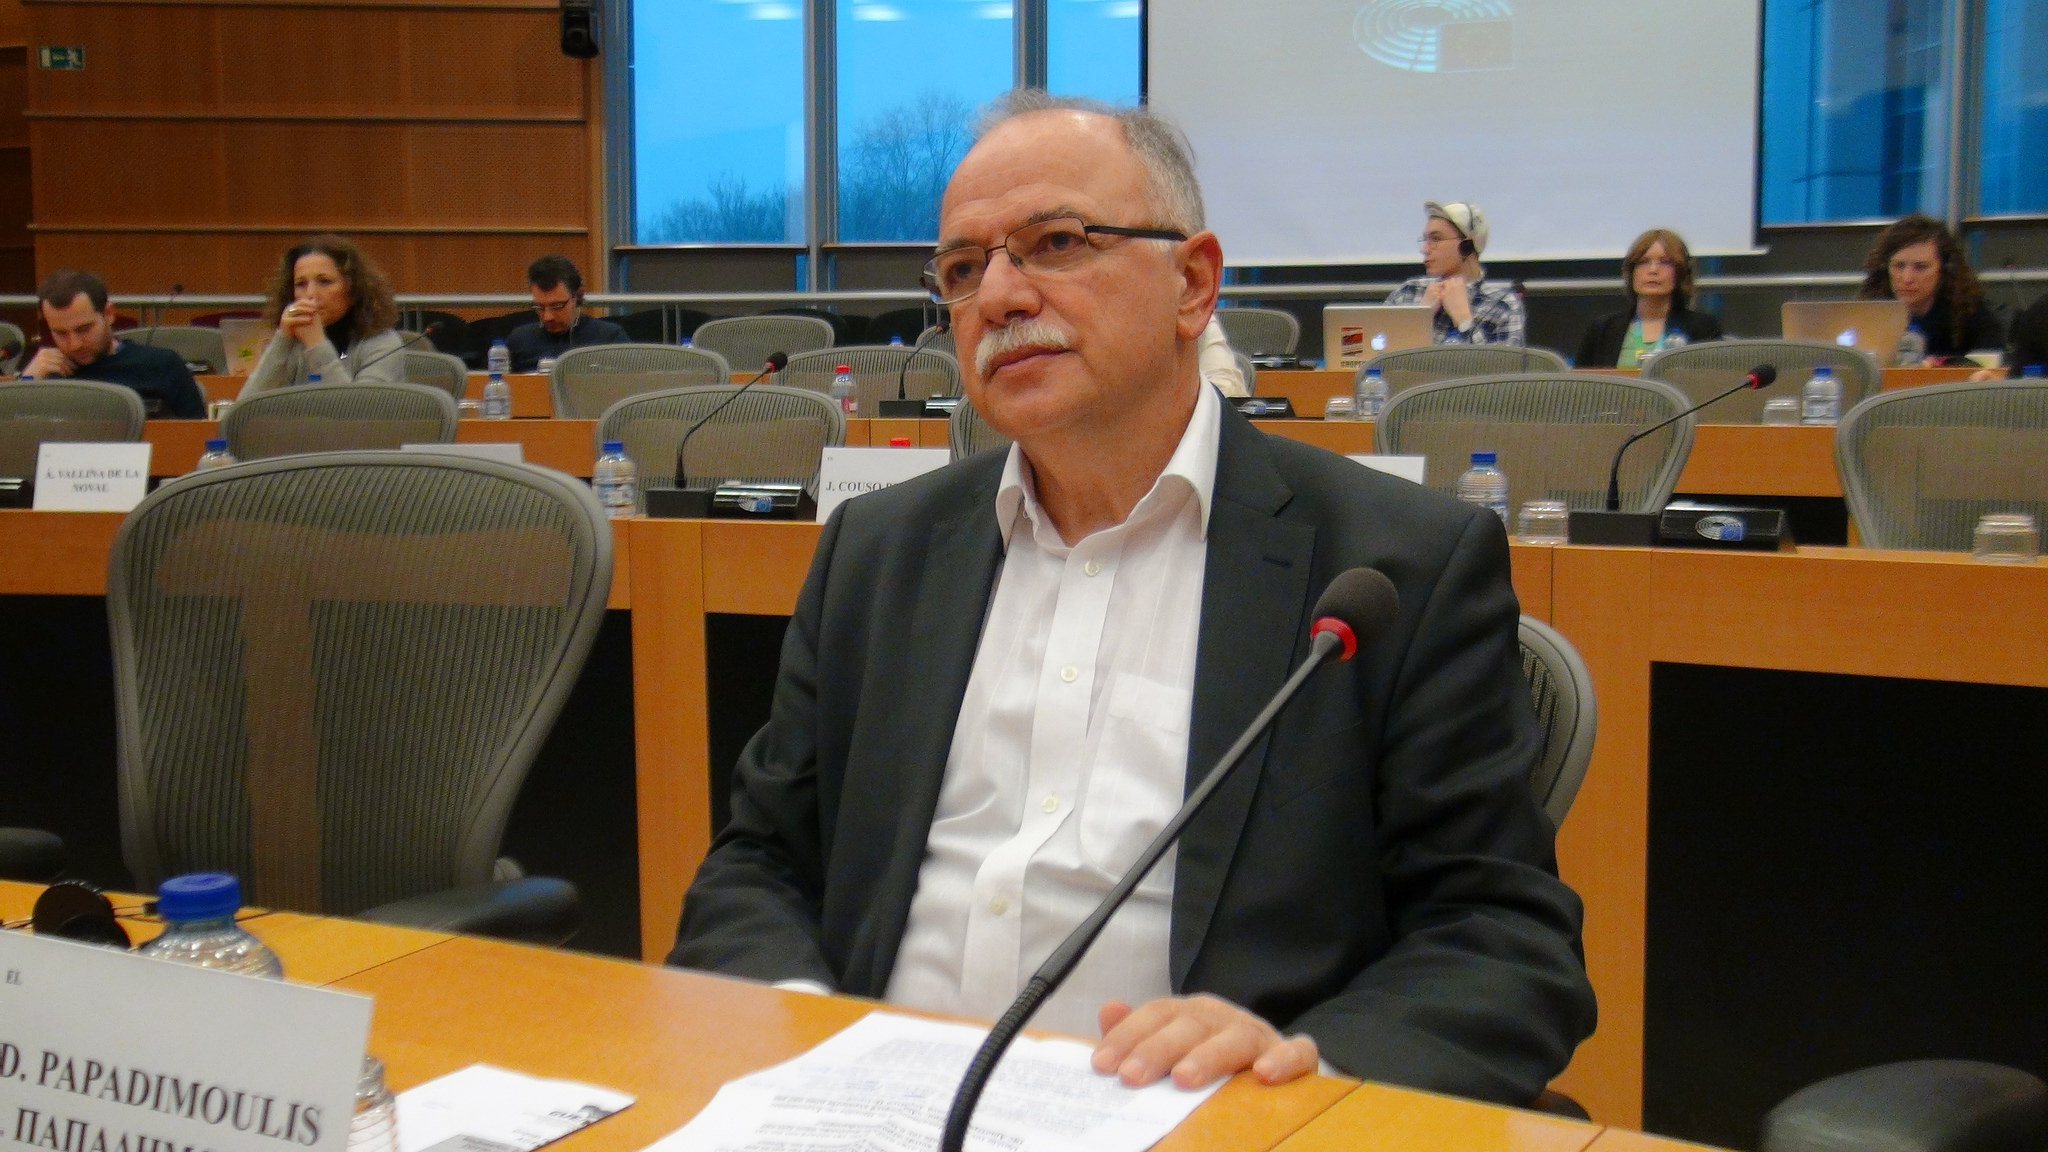 Δημ. Παπαδημούλης: H Κομισιόν και ιδίως το Συμβούλιο, οφείλουν να στηρίξουν περισσότερο την Ελλάδα, την Ιταλία και τους πρόσφυγες